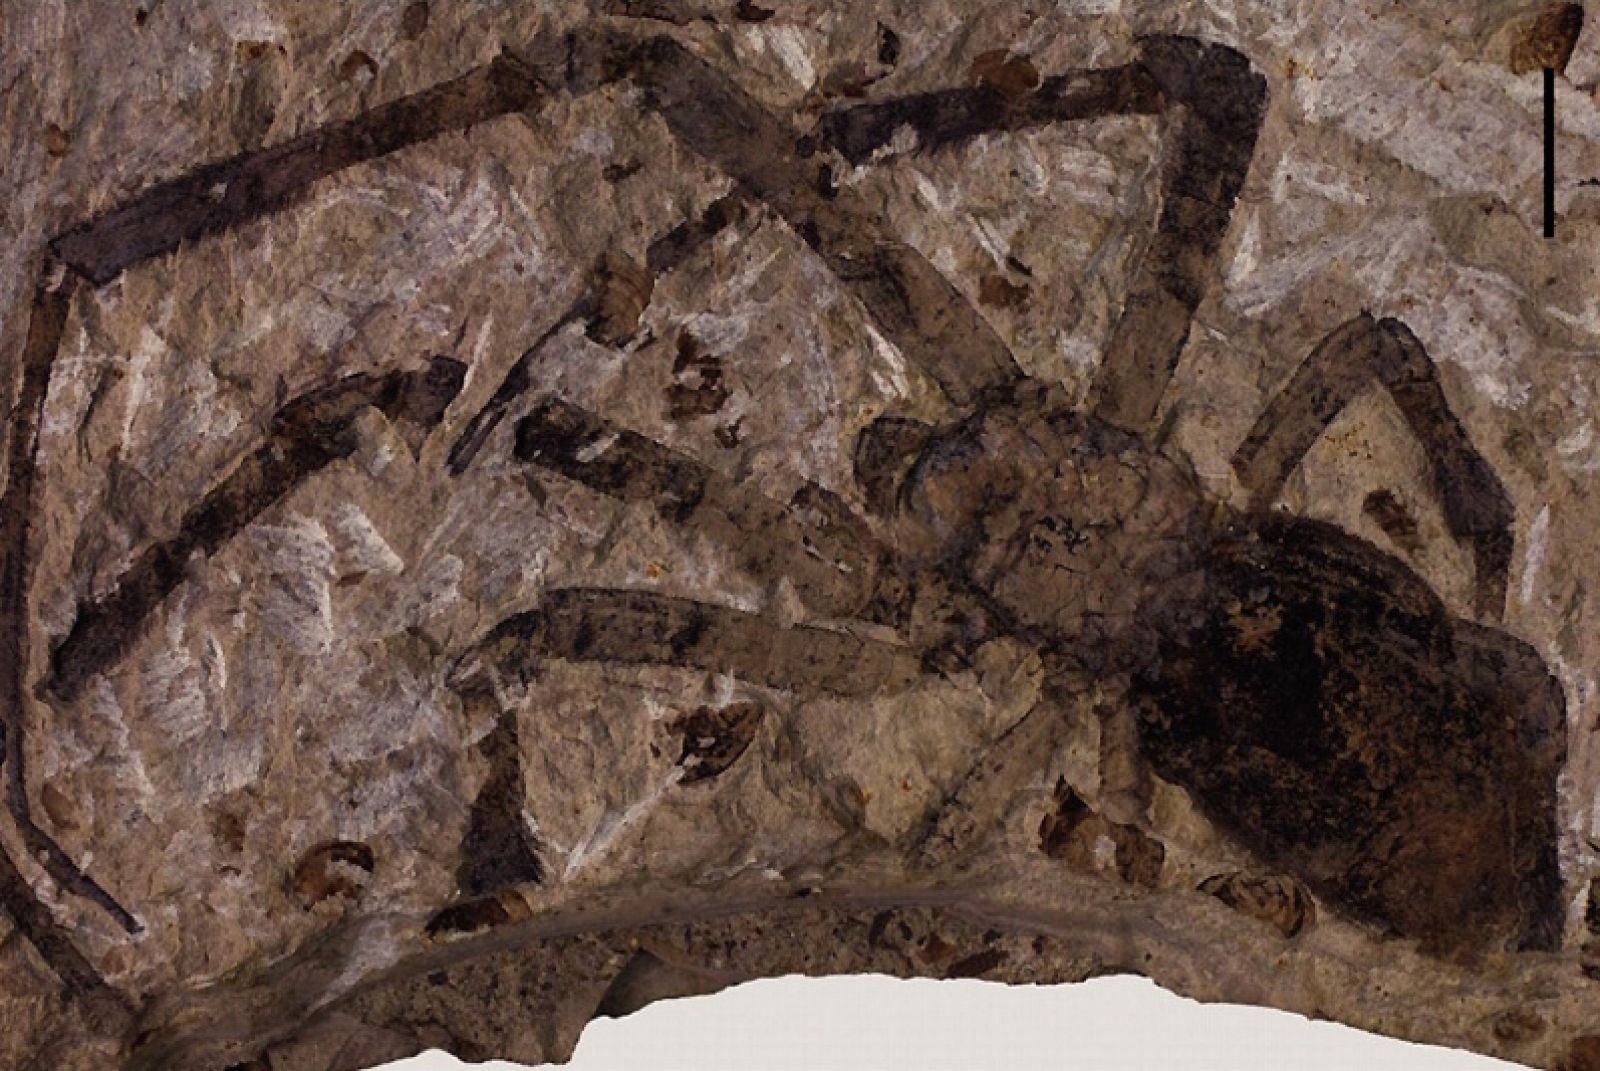 La 'Nephila Jurassica', el fósil de araña más grande jamás descubierto